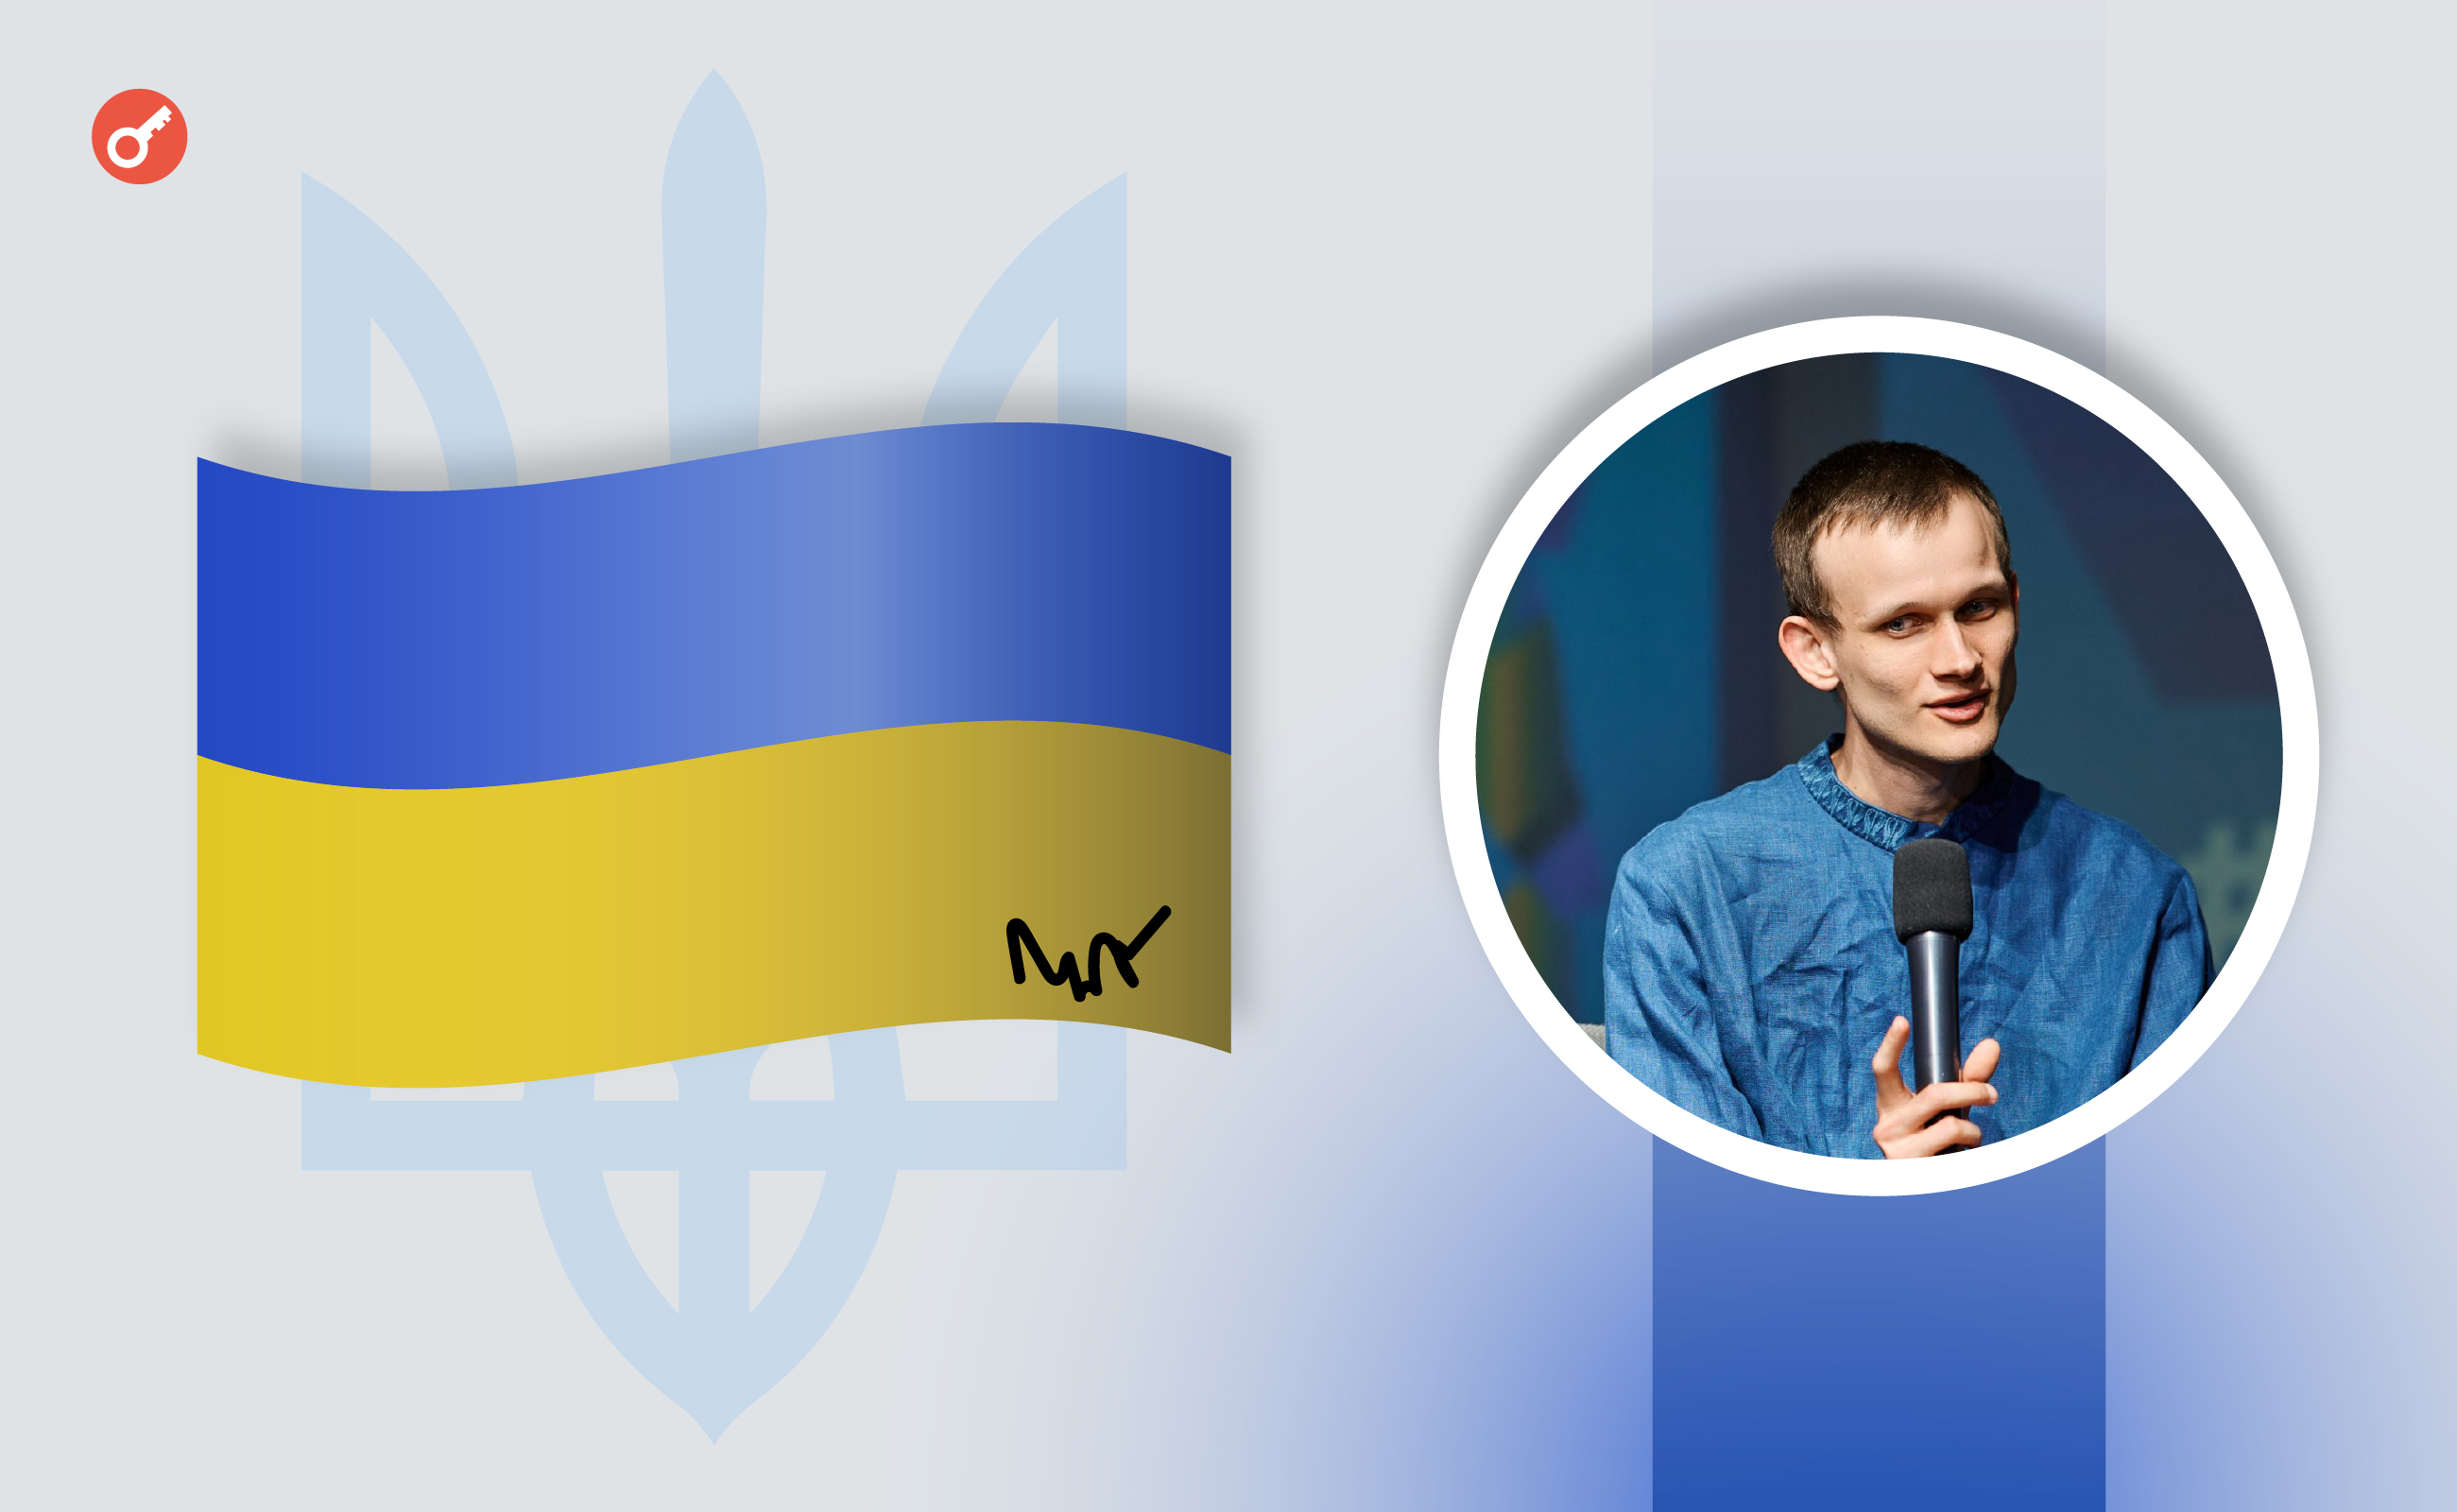 Подписанный Бутериным флаг Украины помог собрать около $8000 для помощи украинским военным. Заглавный коллаж новости.